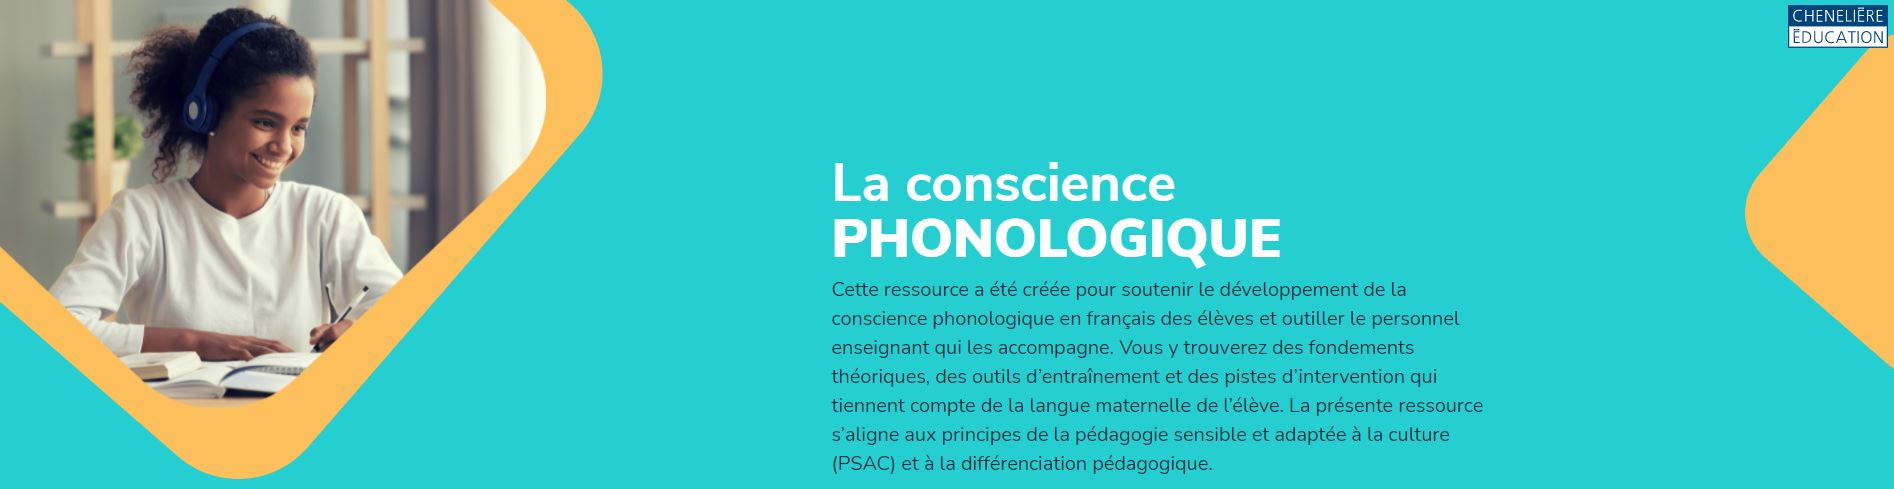 La conscience phonologique - Ressource pour les élèves